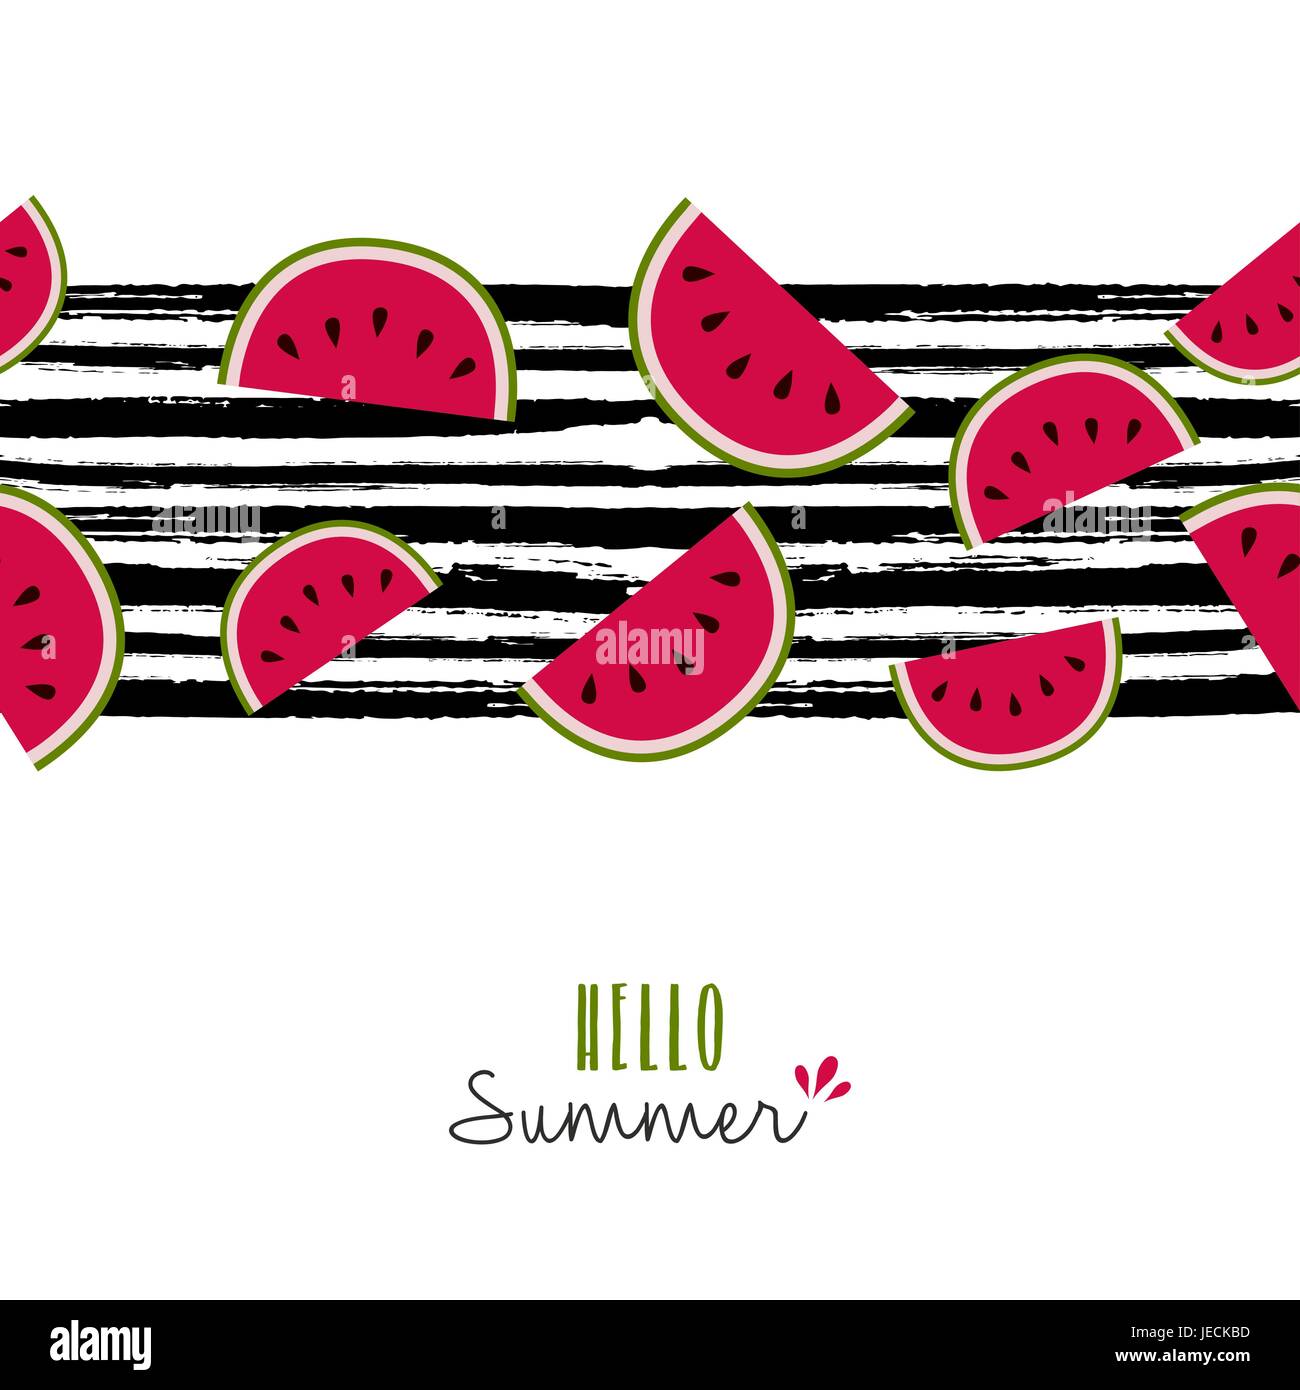 Hallo Sommer Grußkarte Zitat design mit Wassermelone Musterdesign auf Grunge-Farbe-Pinsel-Hintergrund. EPS10 Vektor. Stock Vektor